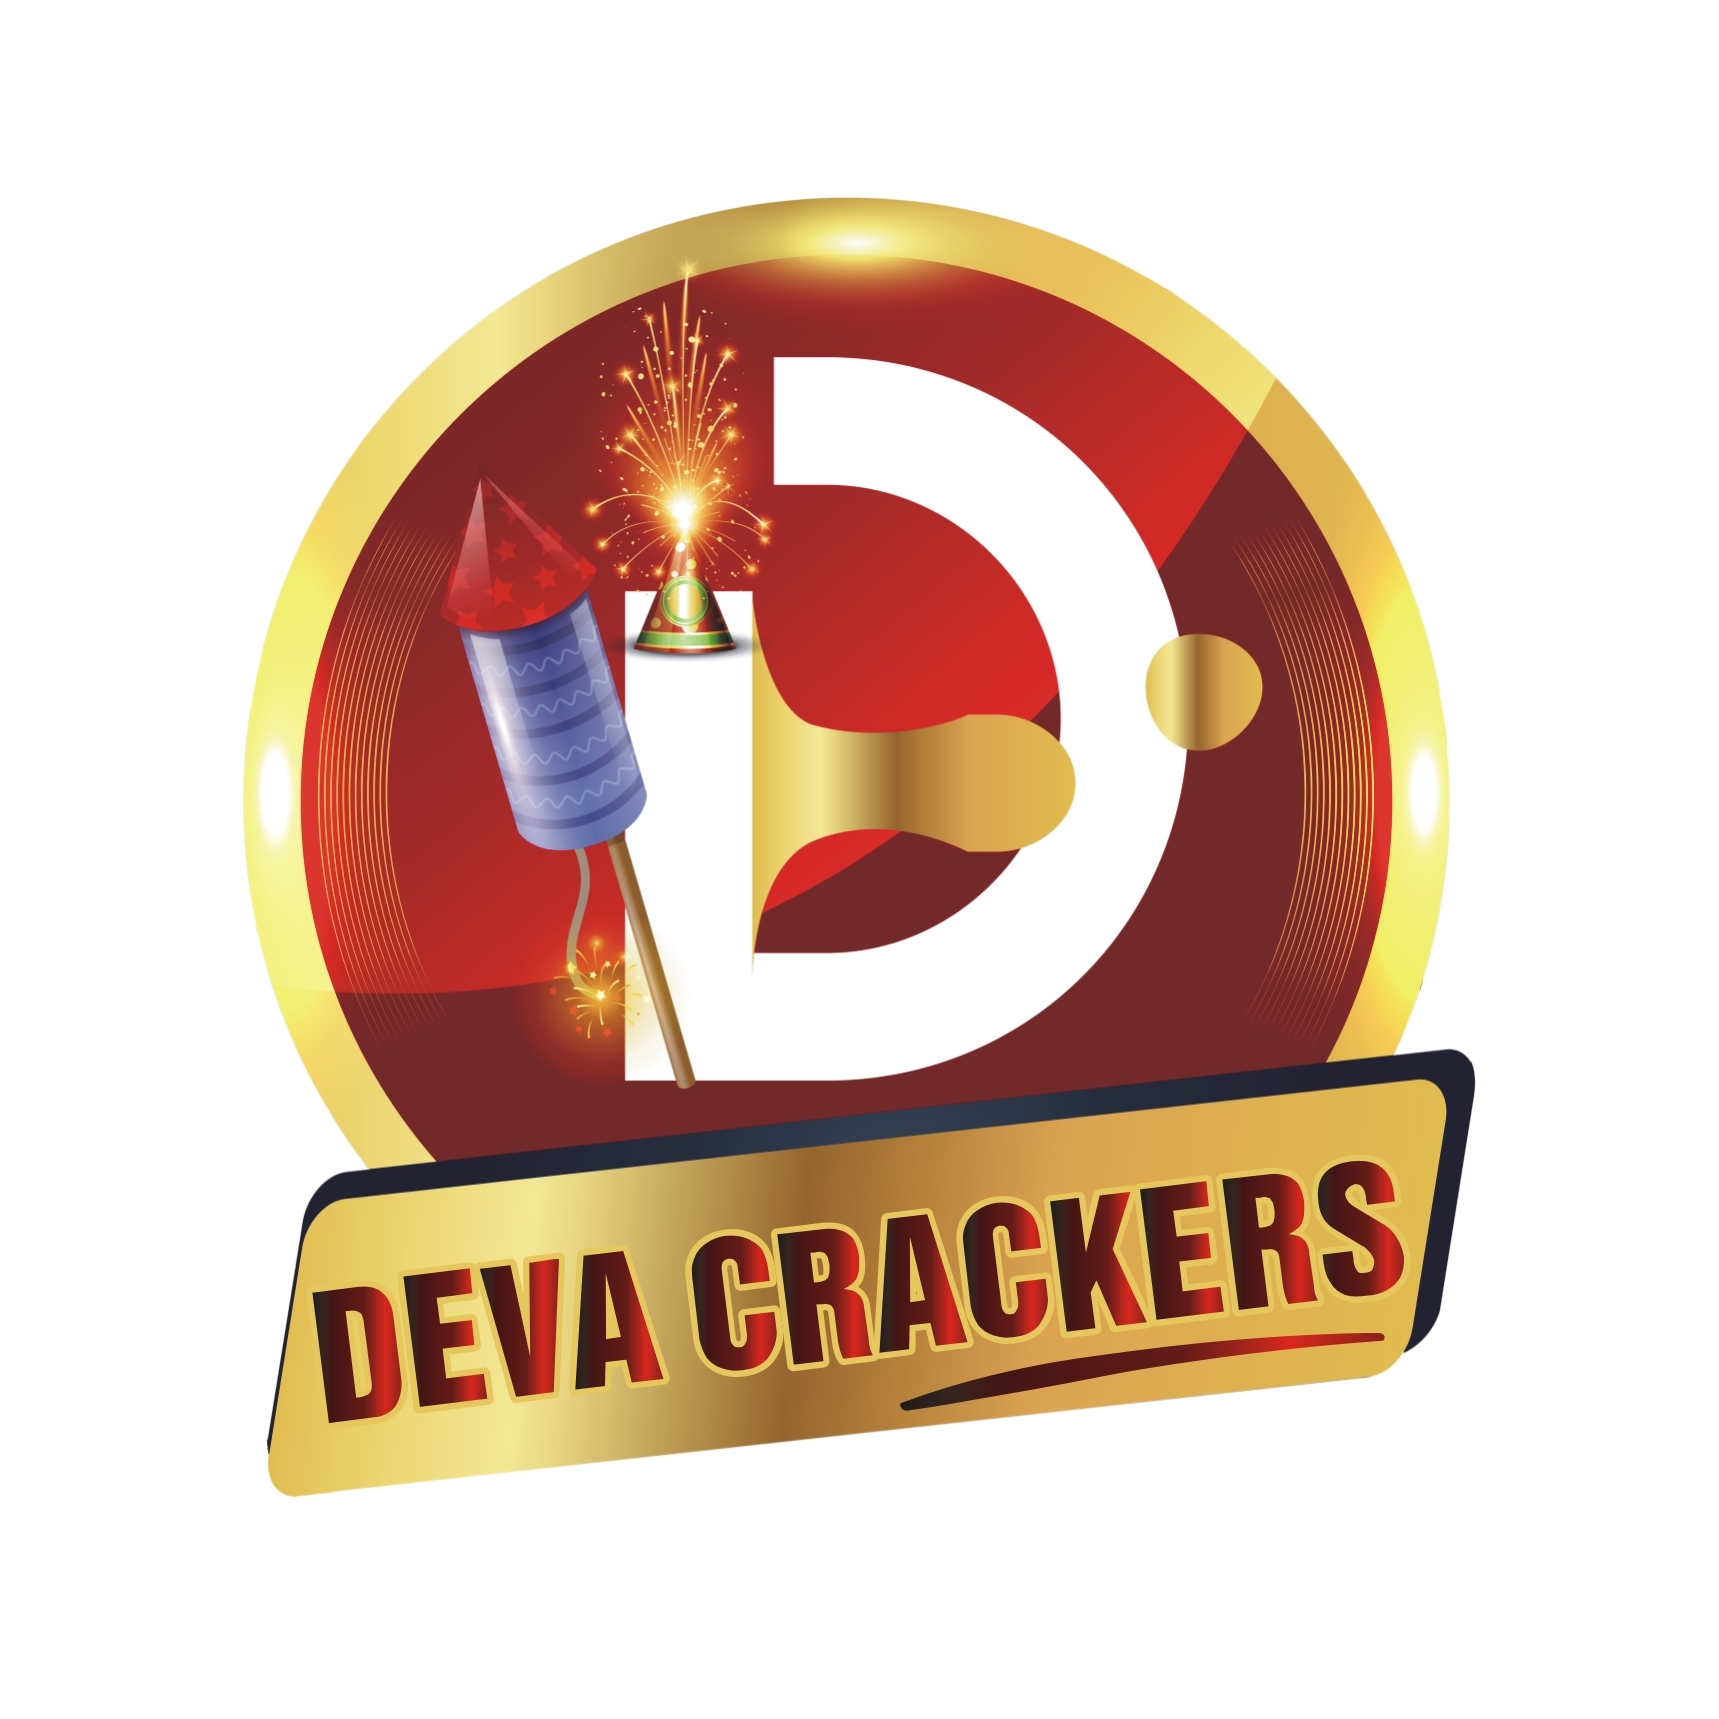 Deva Crackers   Best Crackers Shop In Sivakasi 17139476282